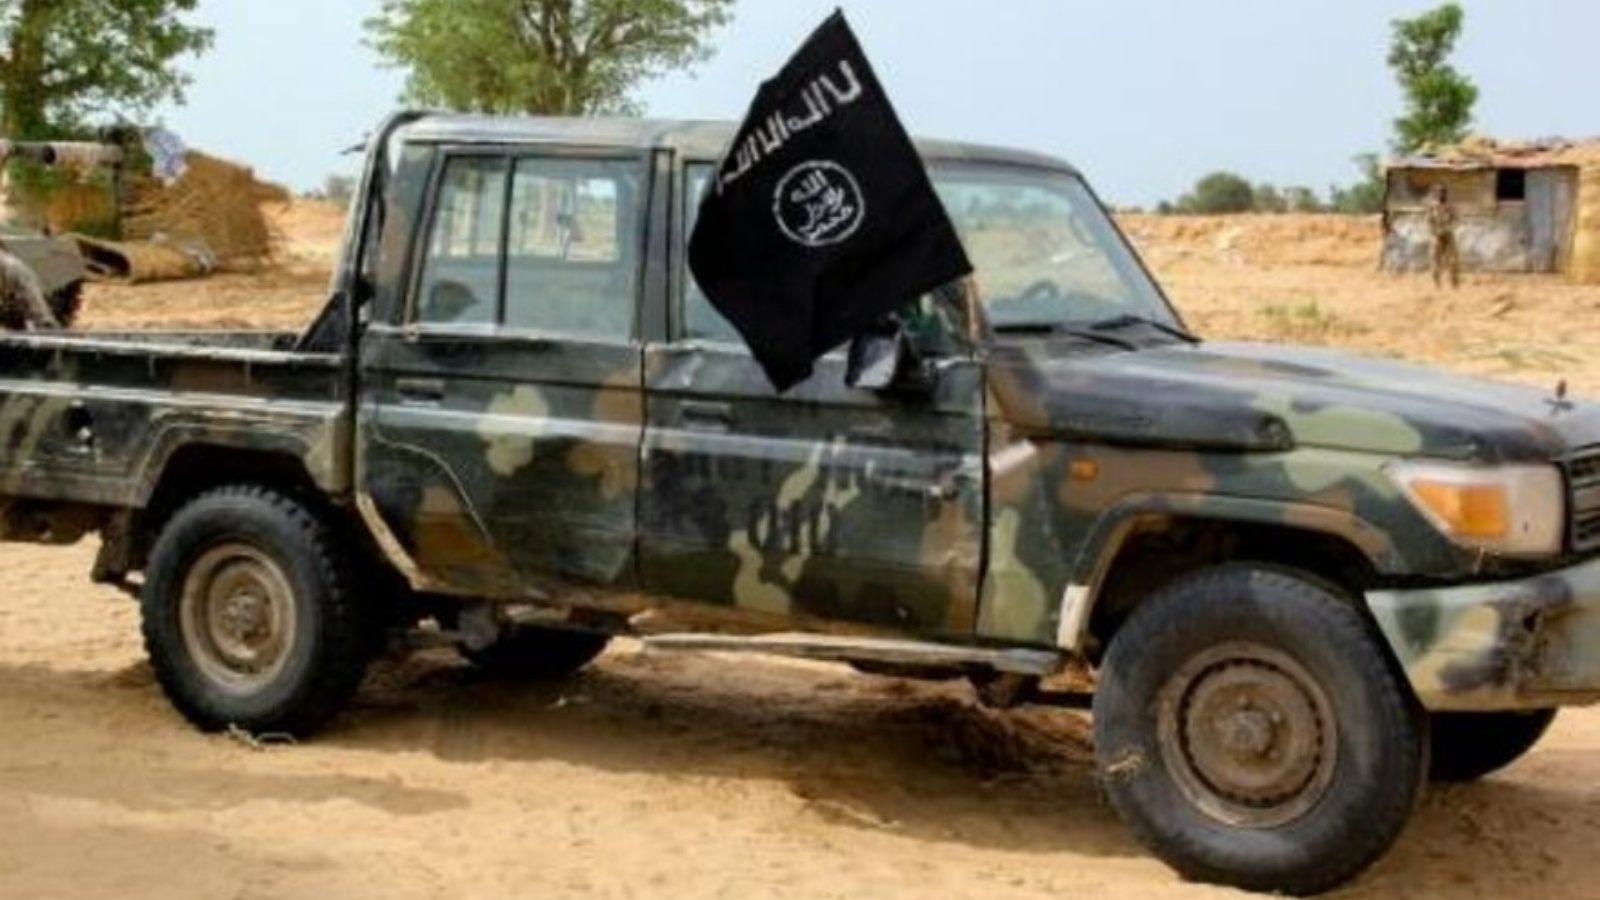 آلية لتنظيم الدولة الإسلامية في باغا بشمال شرق نيجيريا في 02 أغسطس 2019